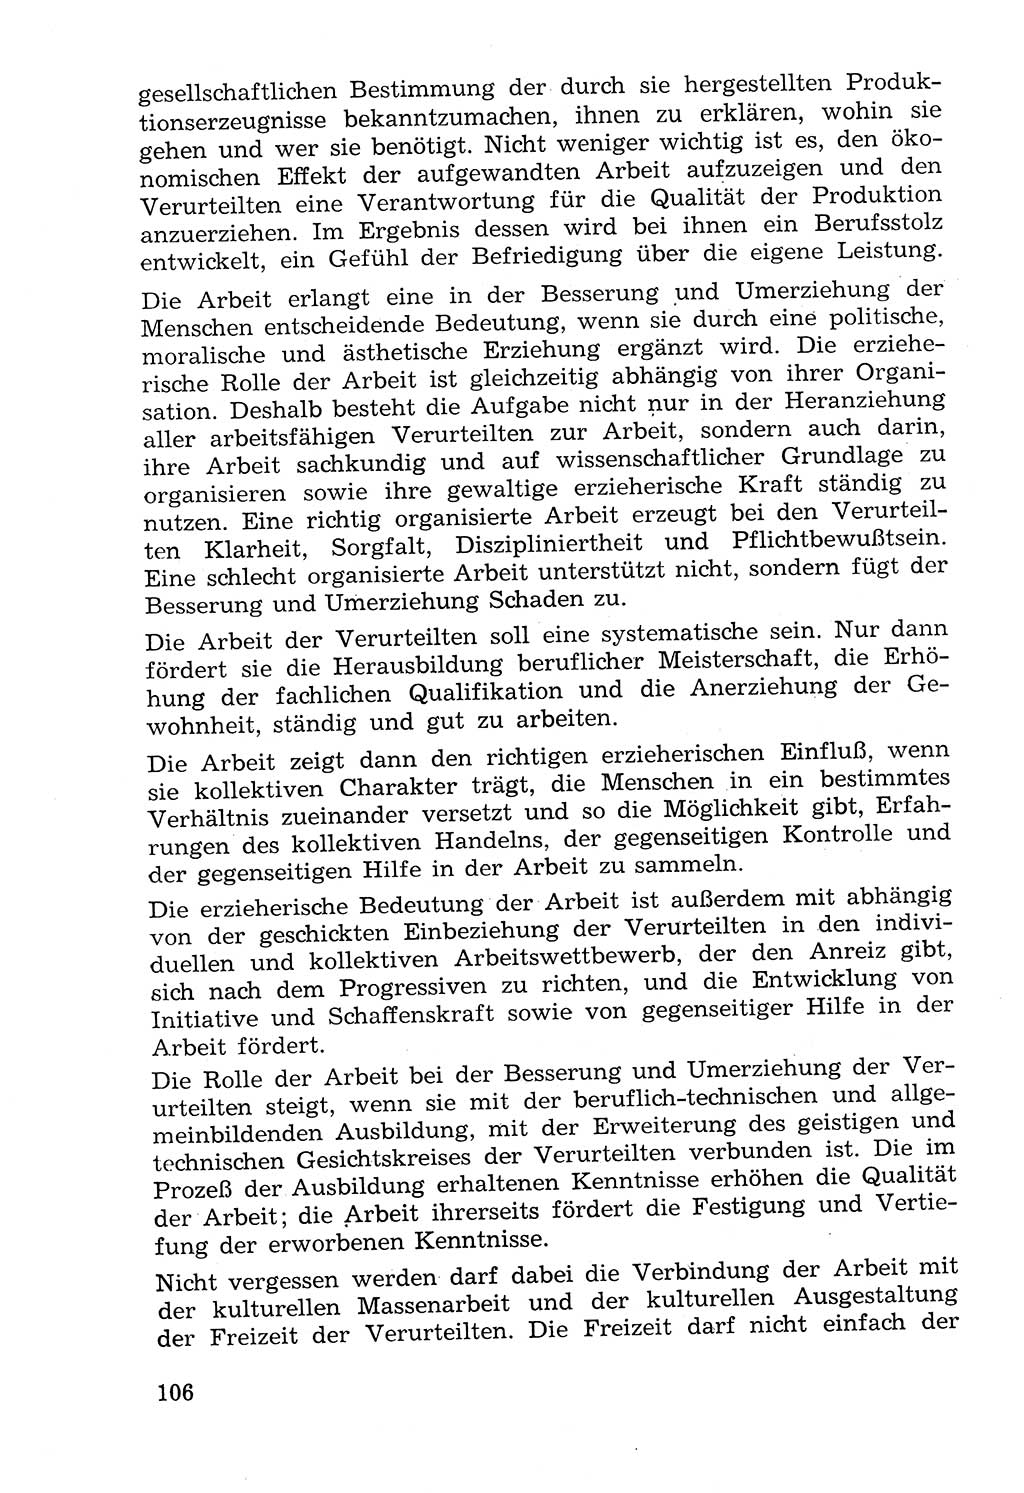 Lehrbuch der Strafvollzugspädagogik [Deutsche Demokratische Republik (DDR)] 1969, Seite 106 (Lb. SV-Pd. DDR 1969, S. 106)